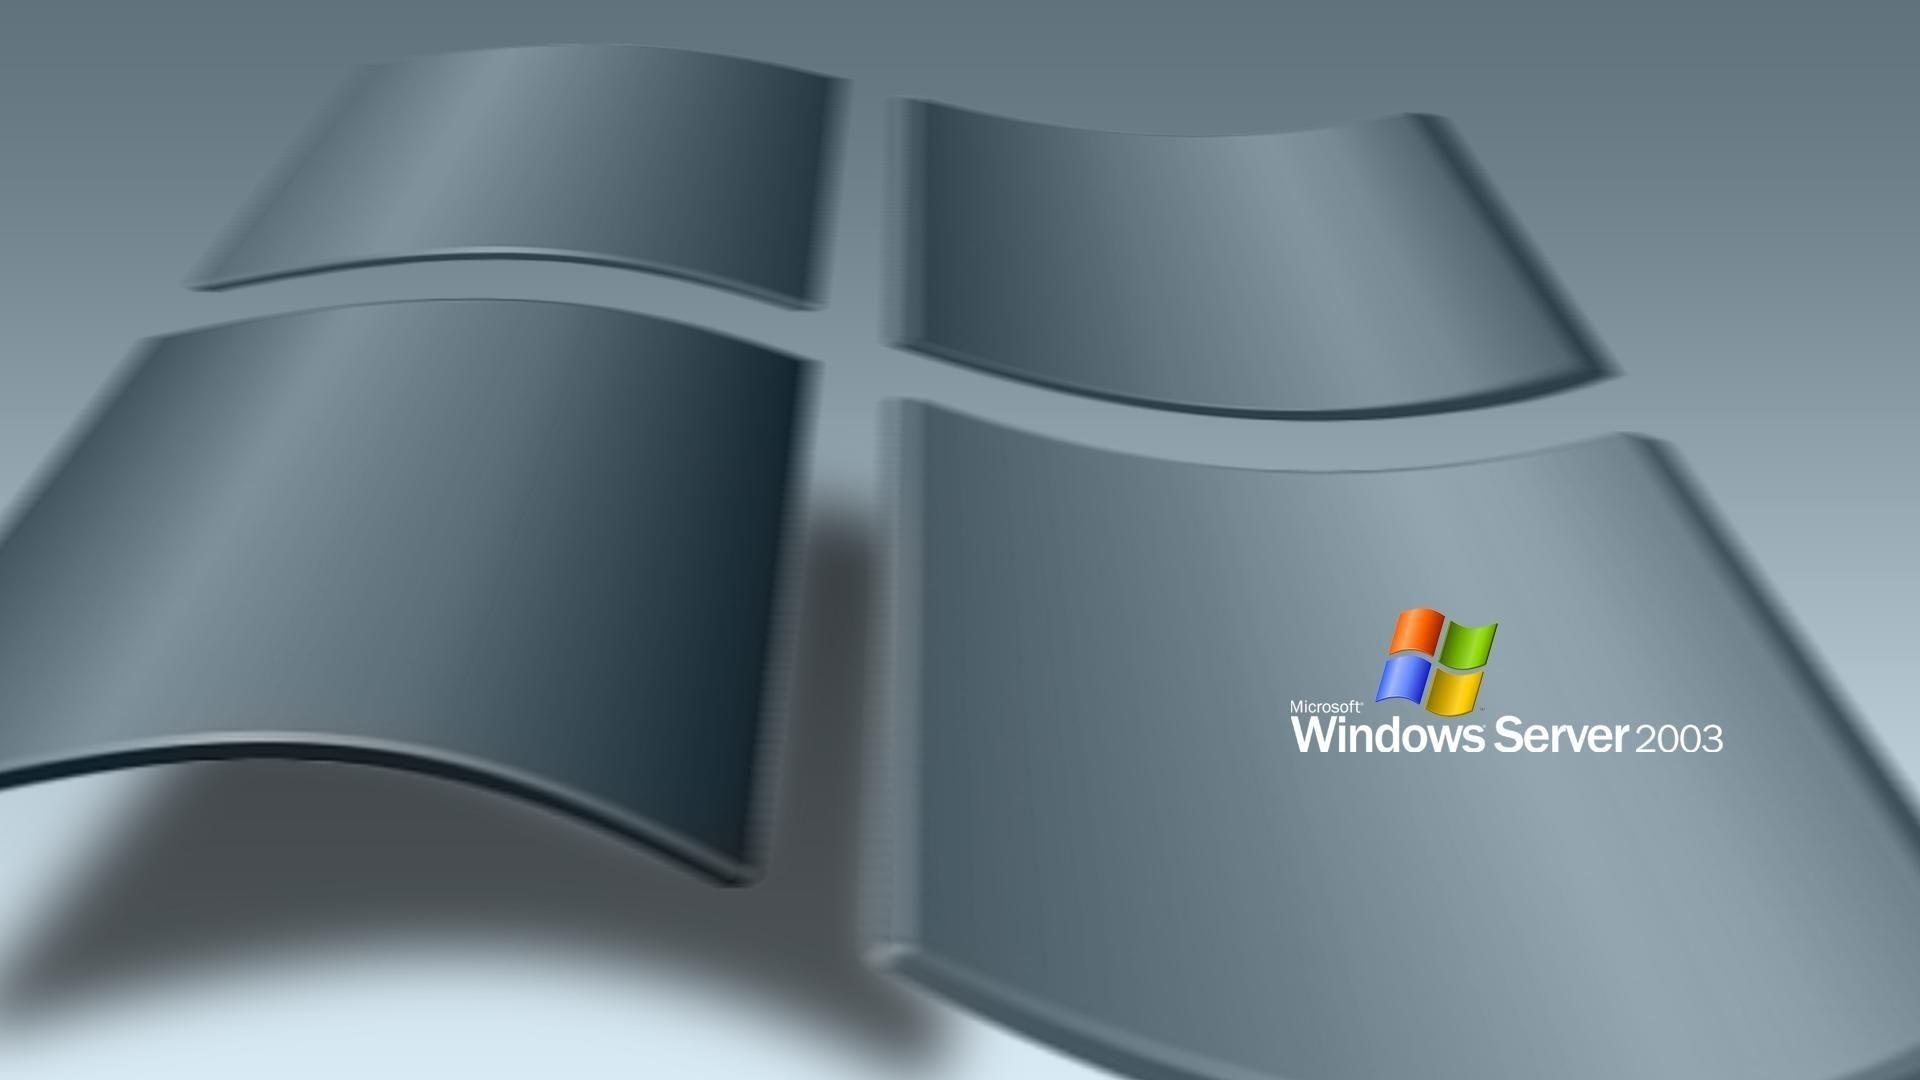 New Windows Server 2008 Wallpaper FULL HD 1080p For PC Desktop